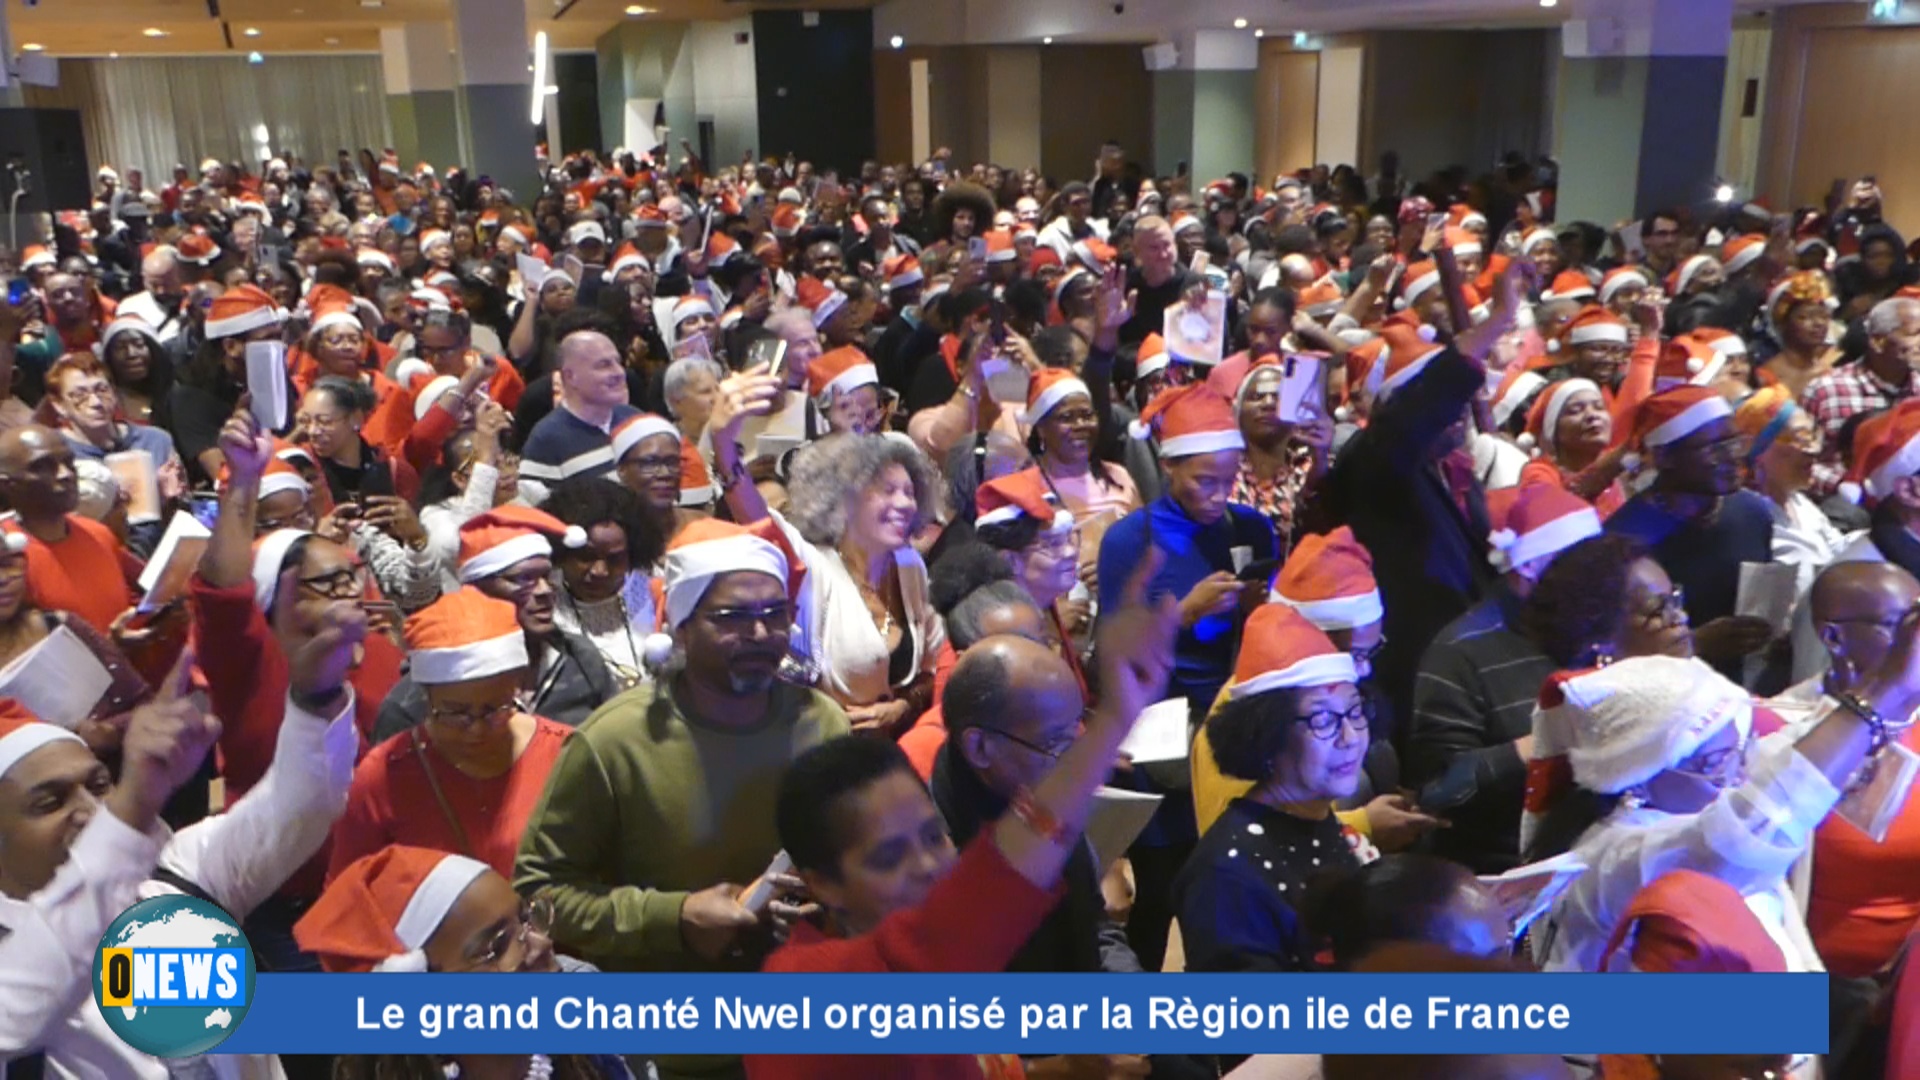 [Vidéo] Hexagone. Le grand chanté Nwel de la Région Ile de France